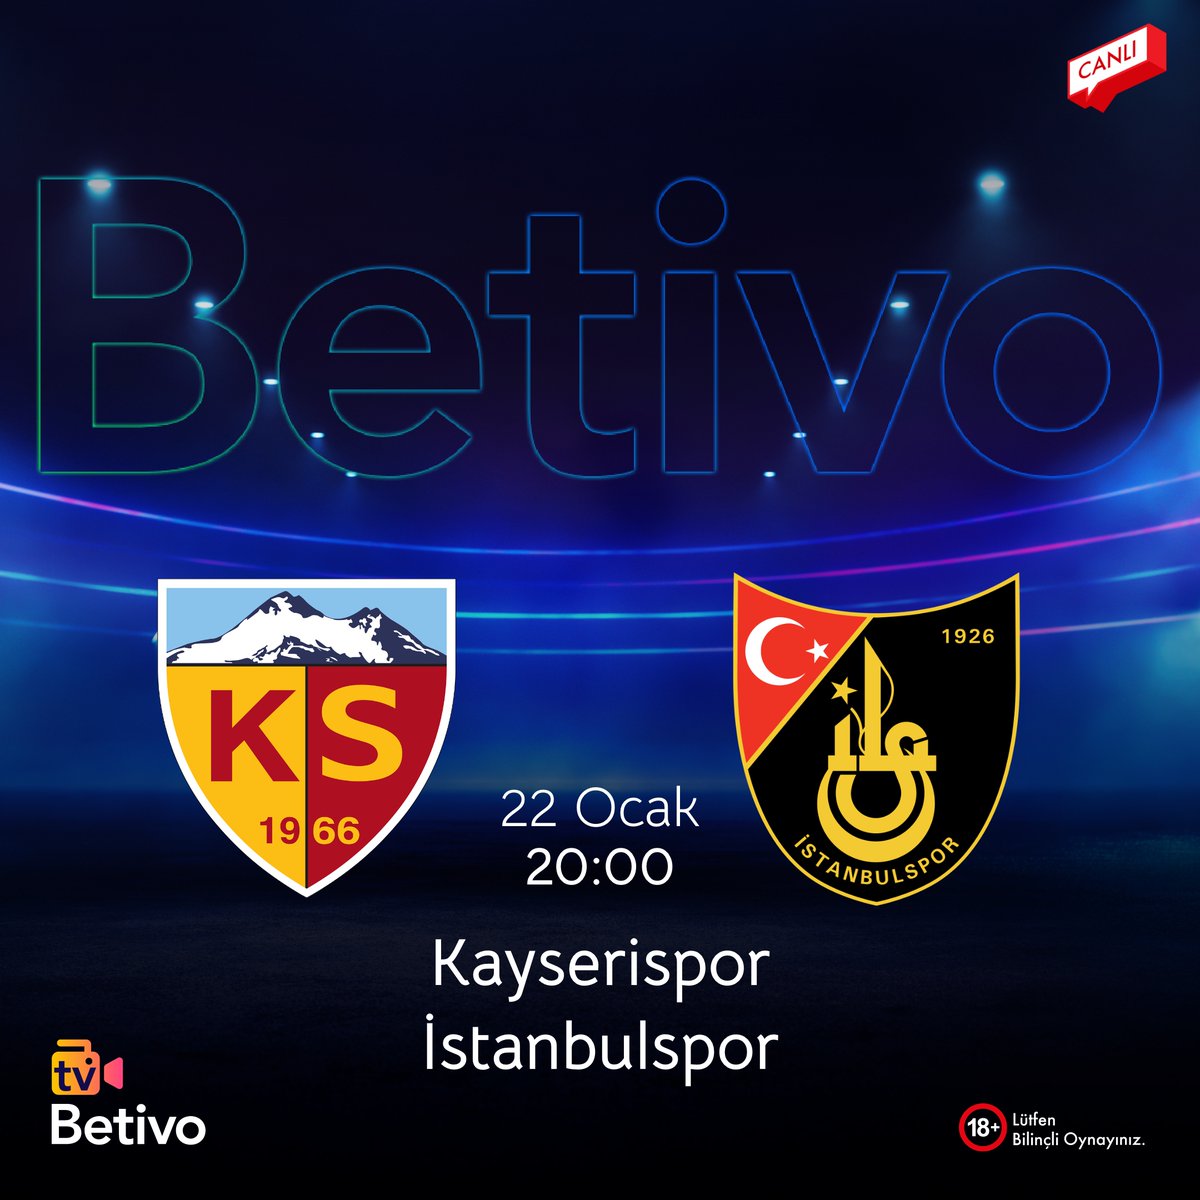 21. Hafta mücadelesi Betivo’da Kazandırıyor!

Kayserispor 🆚 İstanbulspor
🗓️22.01.2024
⏰20:00

➡️Giriş: bit.ly/betivouyeol
👉Telegram : t.me/BetivoTurkiye
📺Tv: bit.ly/BetivoTV

#bahis #spor #canlıizle #CanlıTV #betivo #Betivotv #KYSvİST #KYSR #superlig